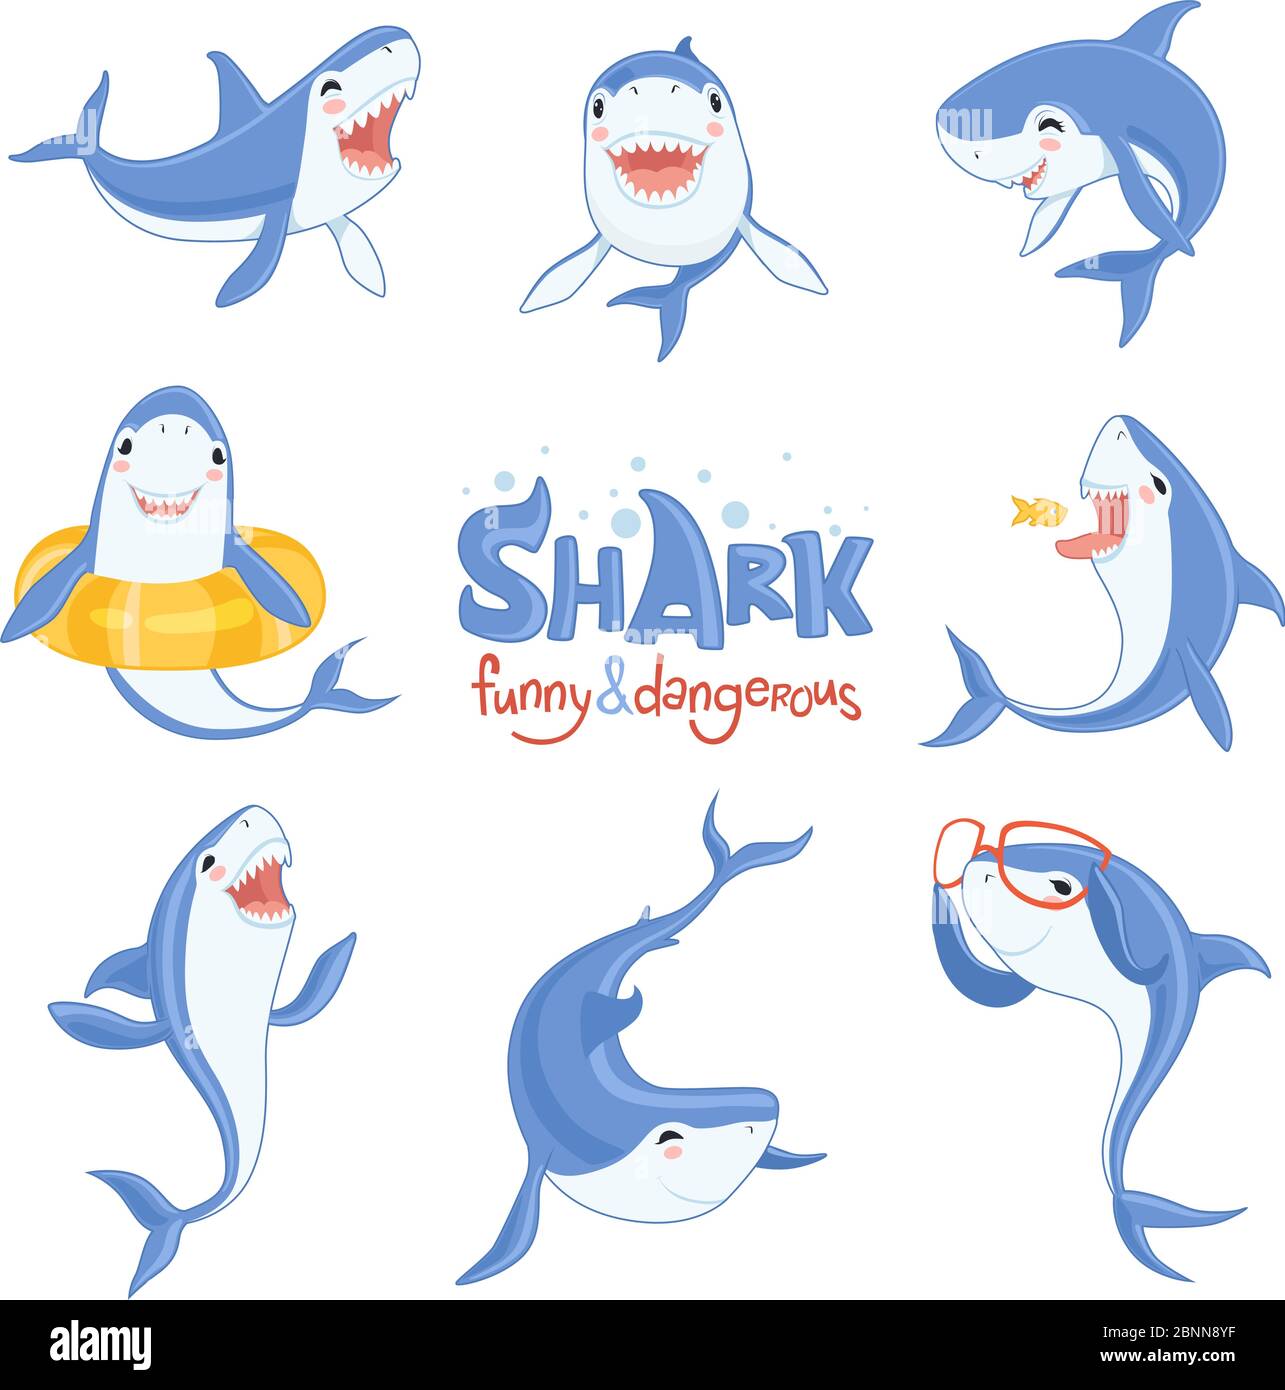 Niedliches Hai-Tier. Fisch Angriff spielen hungrig und glücklich Ozean Meerhai mit großen Zähnen gruselig blauen Vektor Zeichen Stock Vektor